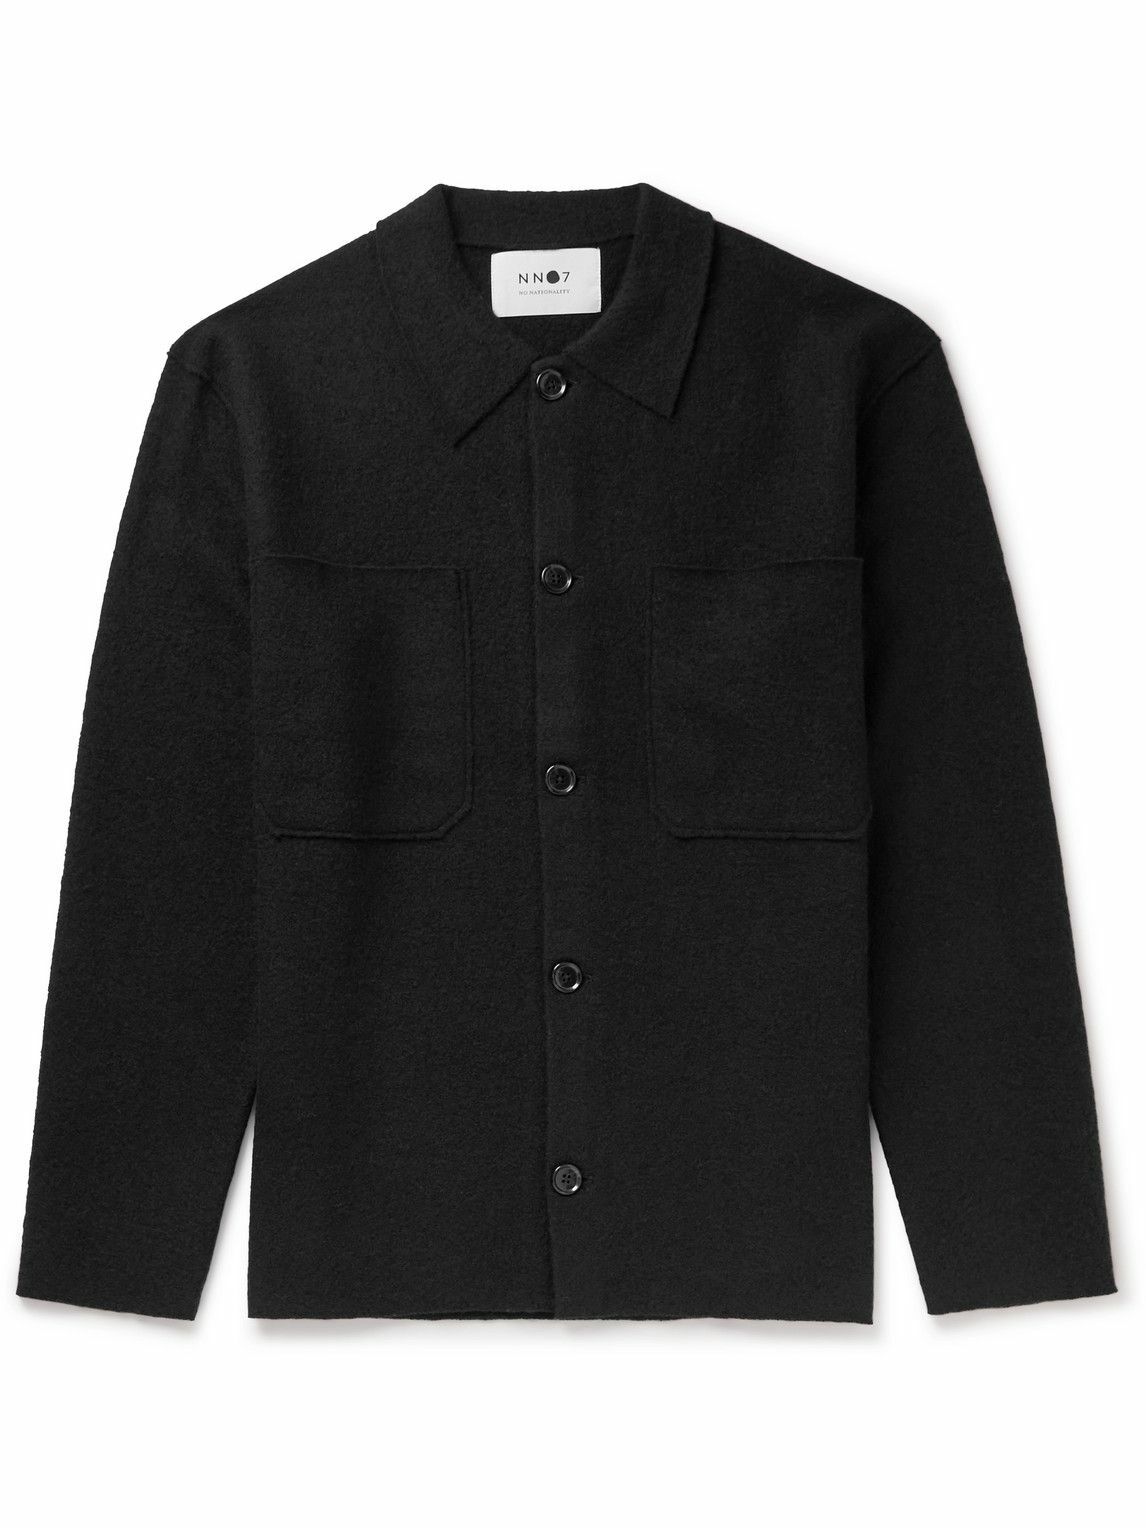 NN07 - Jonas 6398 Merino Wool Overshirt - Black NN07